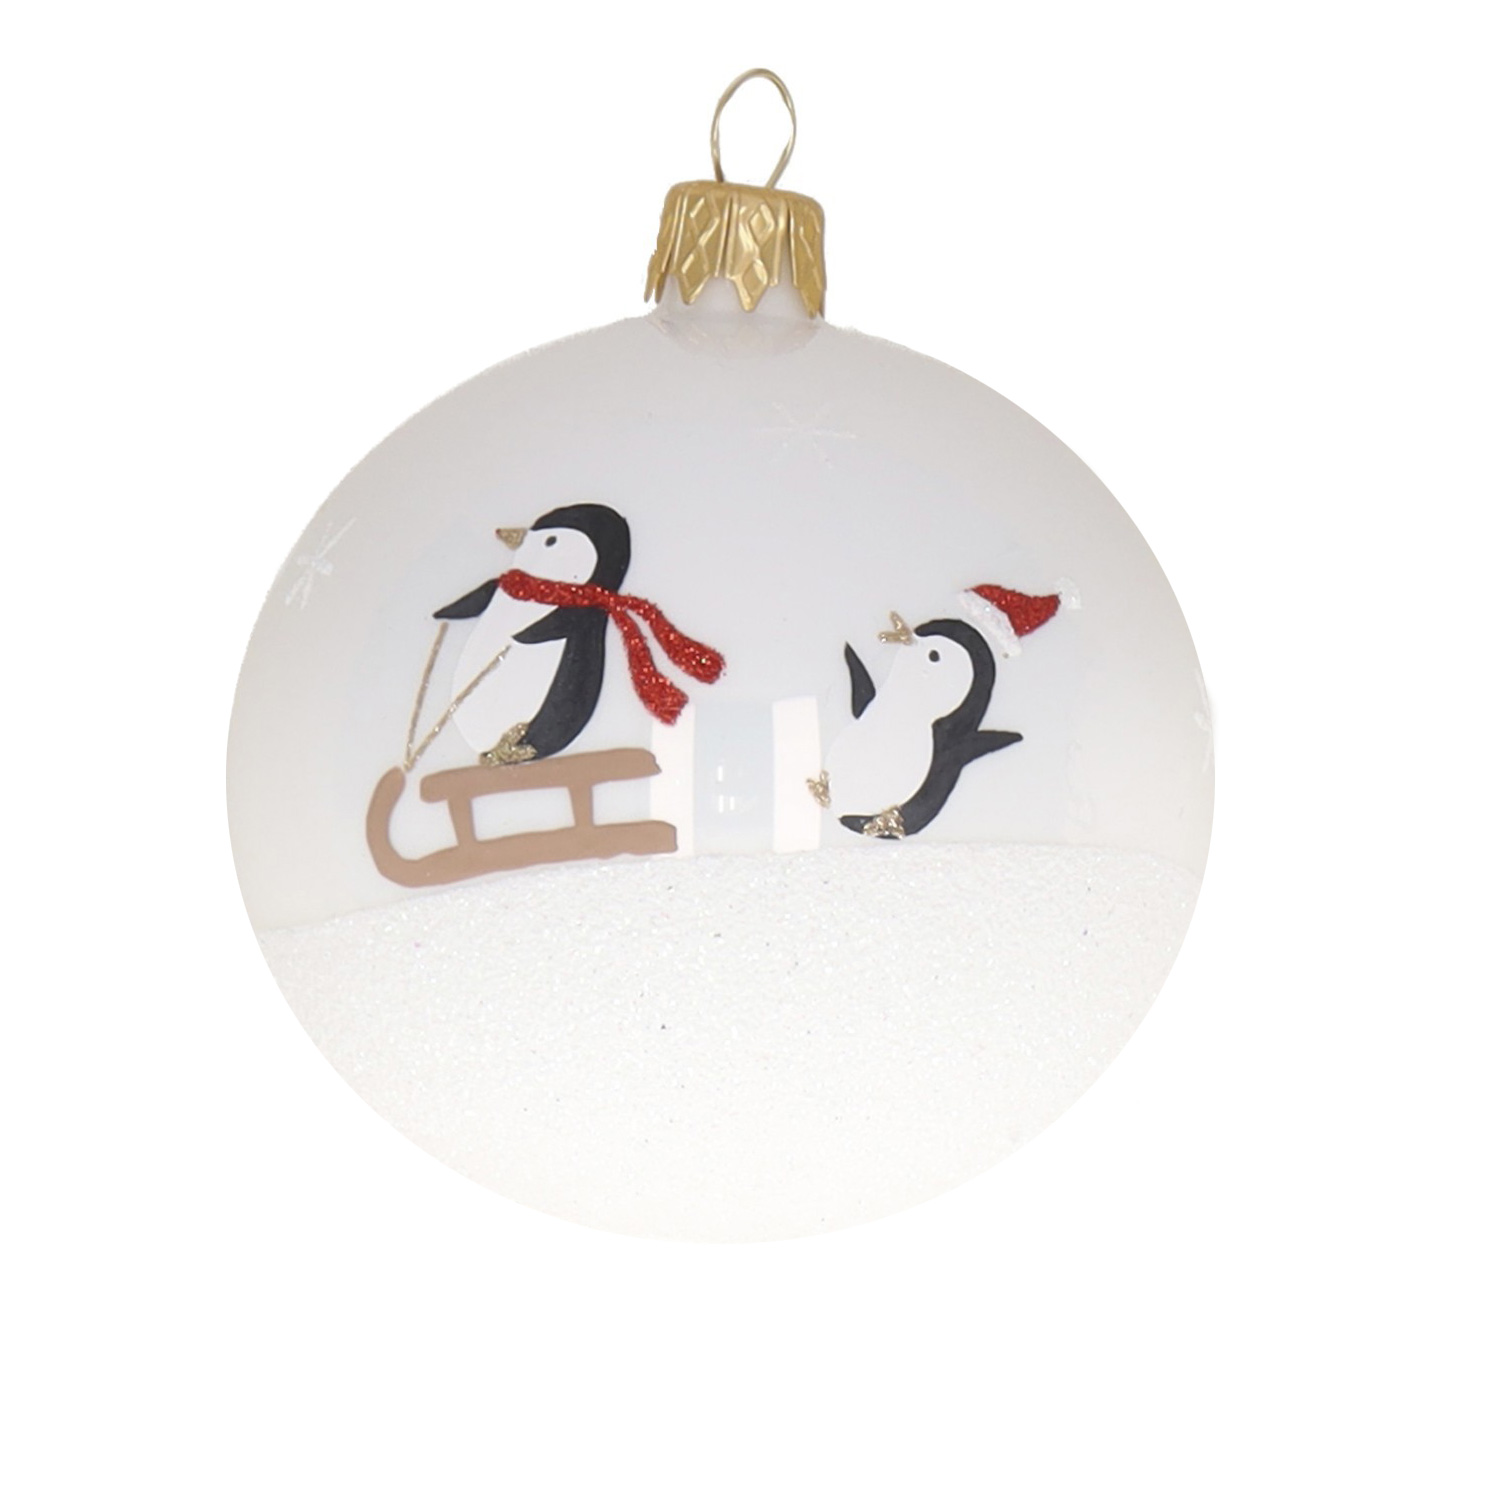 Weihnachtskugel "Pinguine" schwarz-braun-weiß, D. ca. 8 cm, handbemalt, weiß glänzend